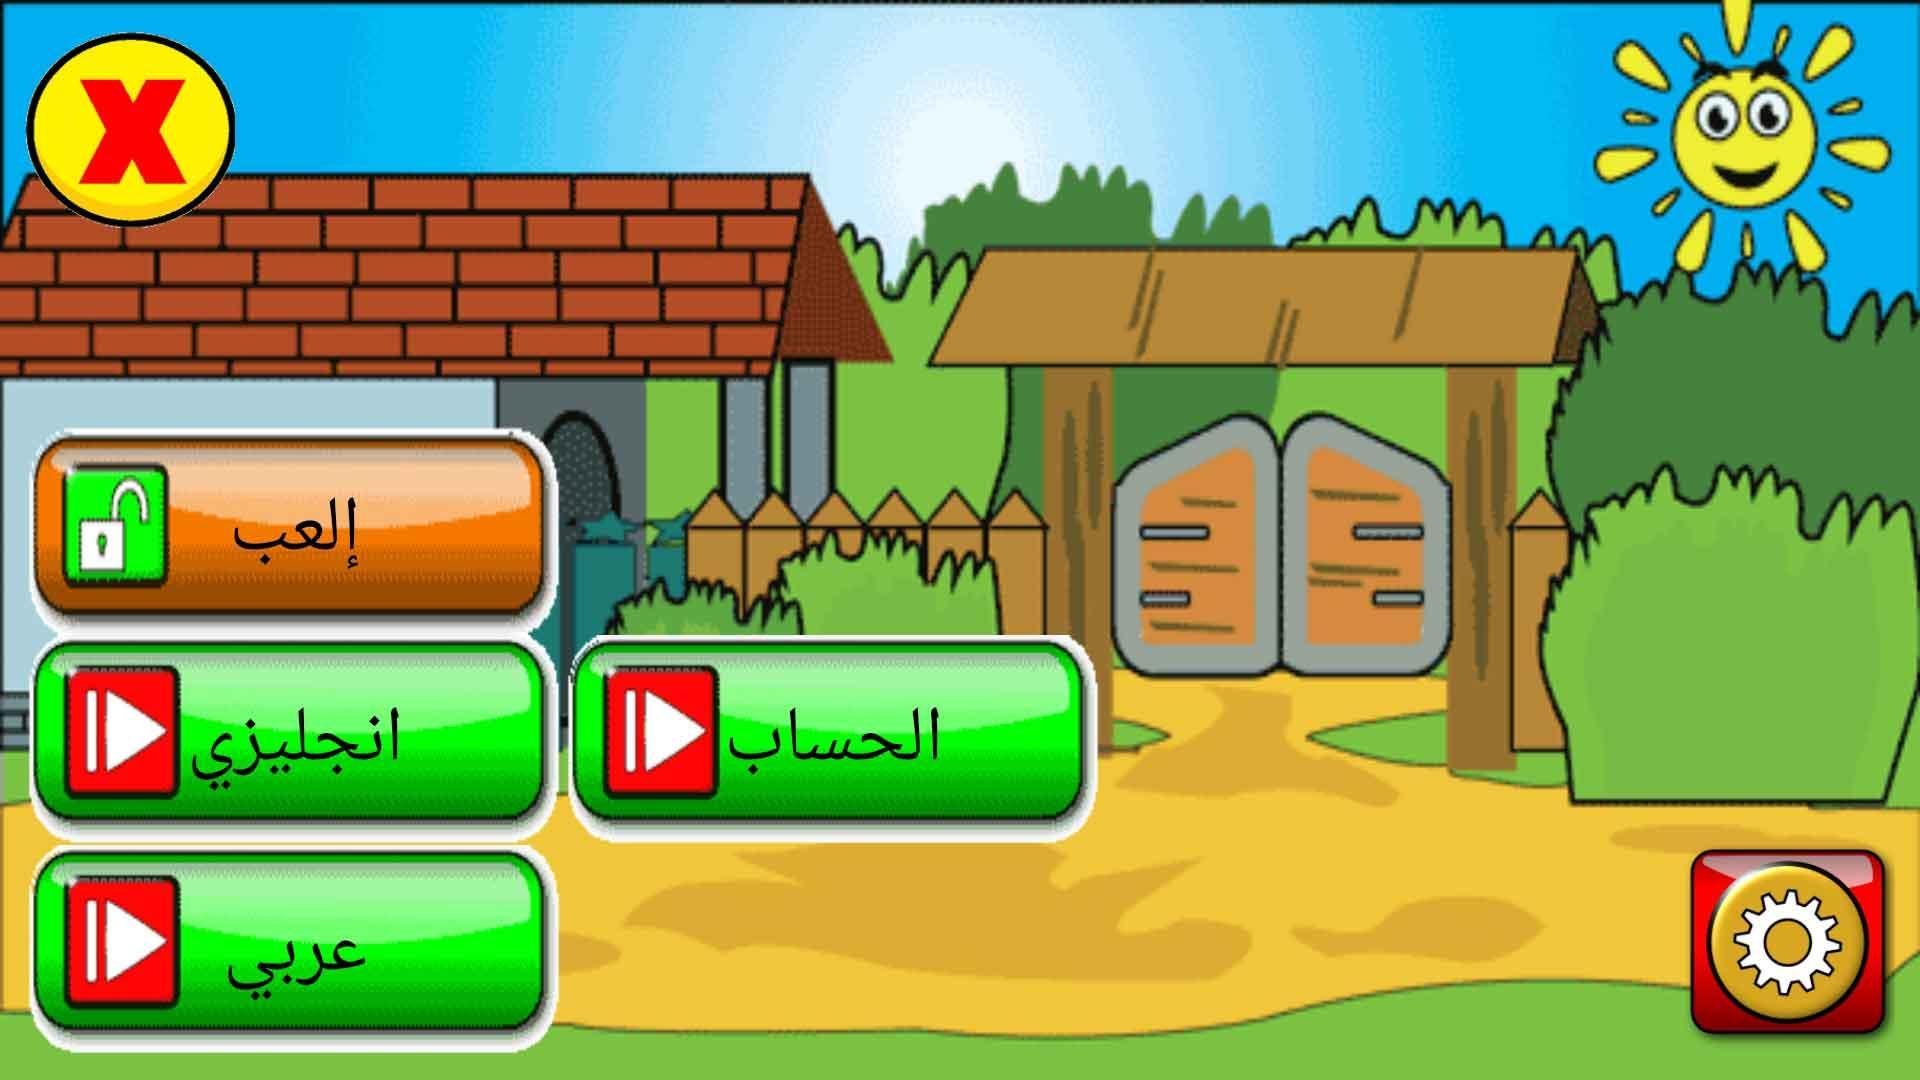 تعليم اللغة العربية الانجليزية للاطفال حروف ارقام. for Android - APK Download